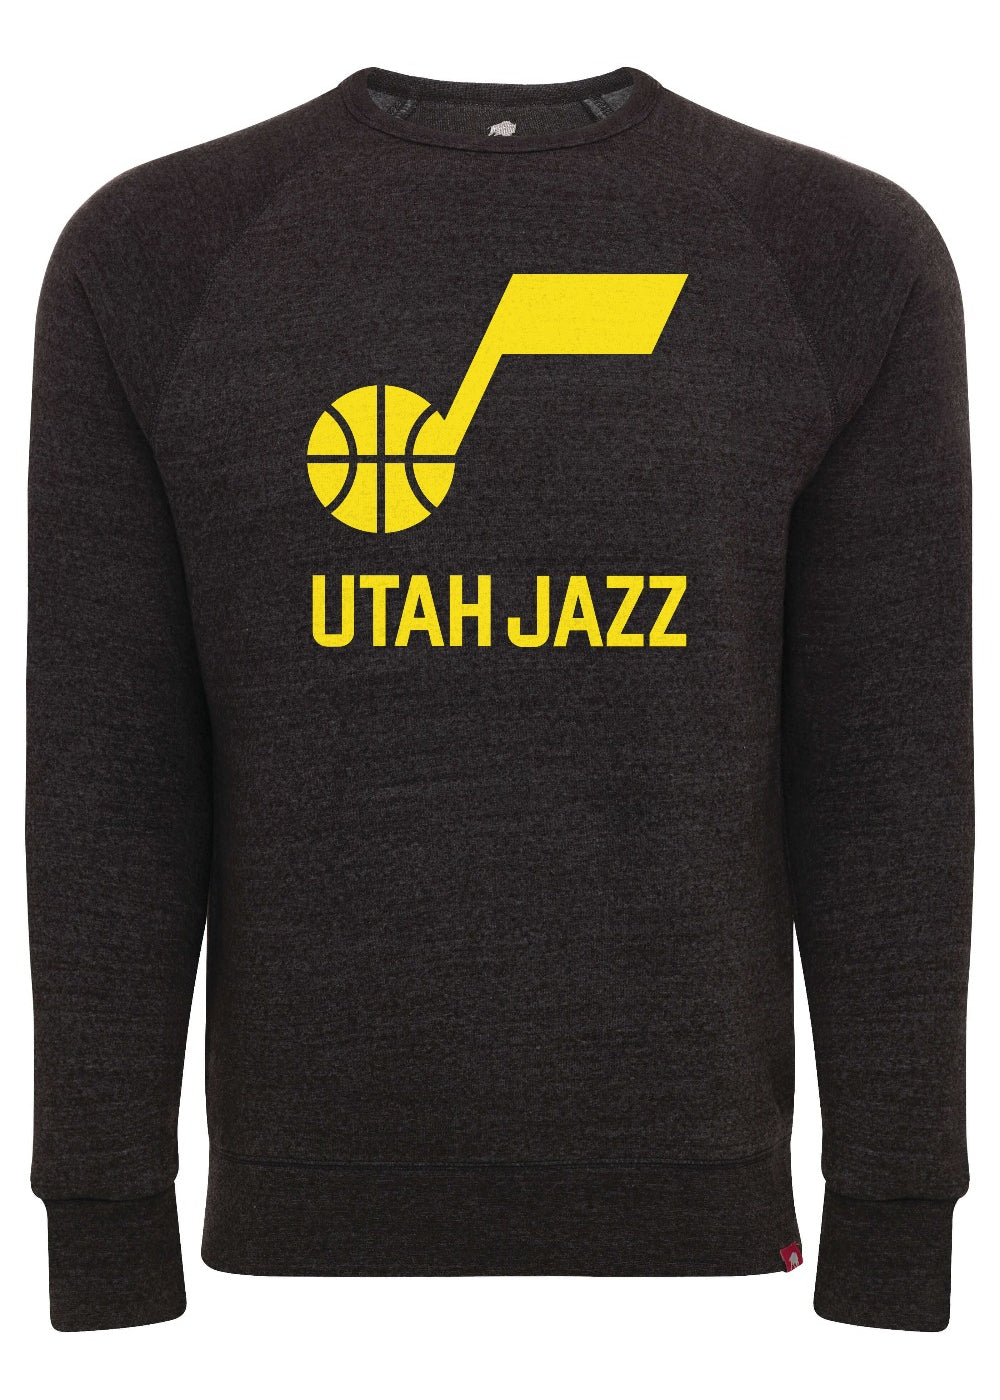 Team Name Crewneck - Black - Primary - WEAR – Utah Jazz Team Store